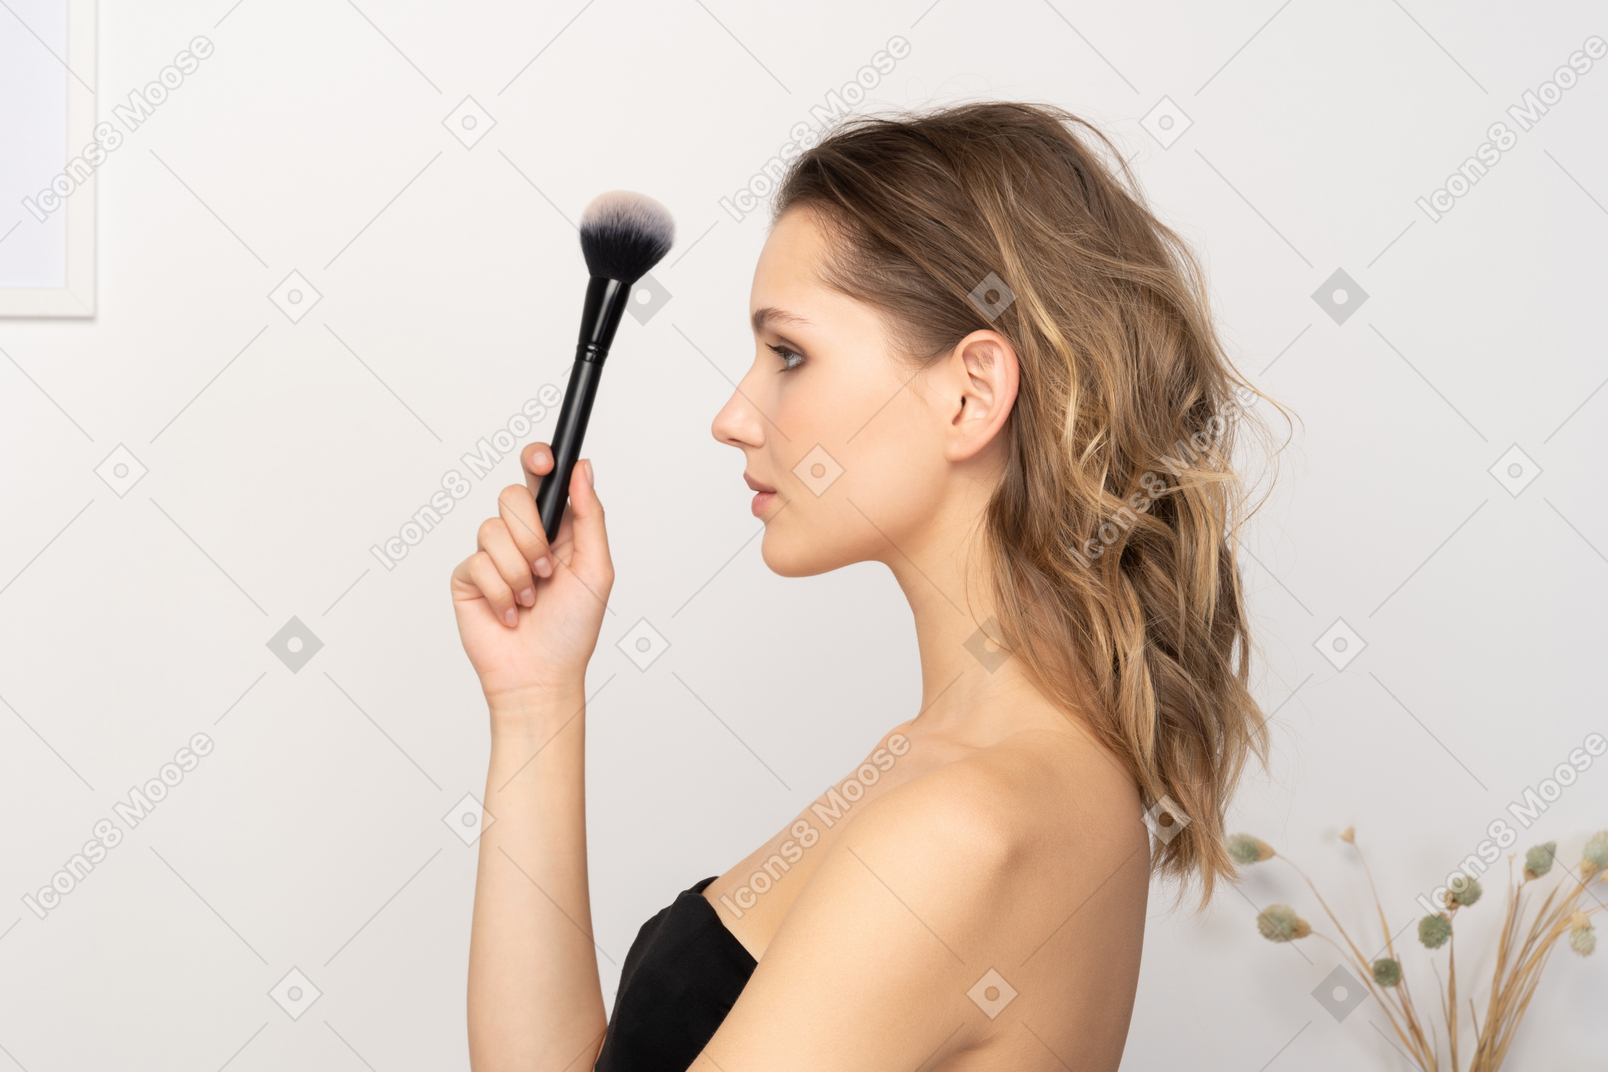 Вид сбоку чувственной молодой женщины, держащей кисть для макияжа